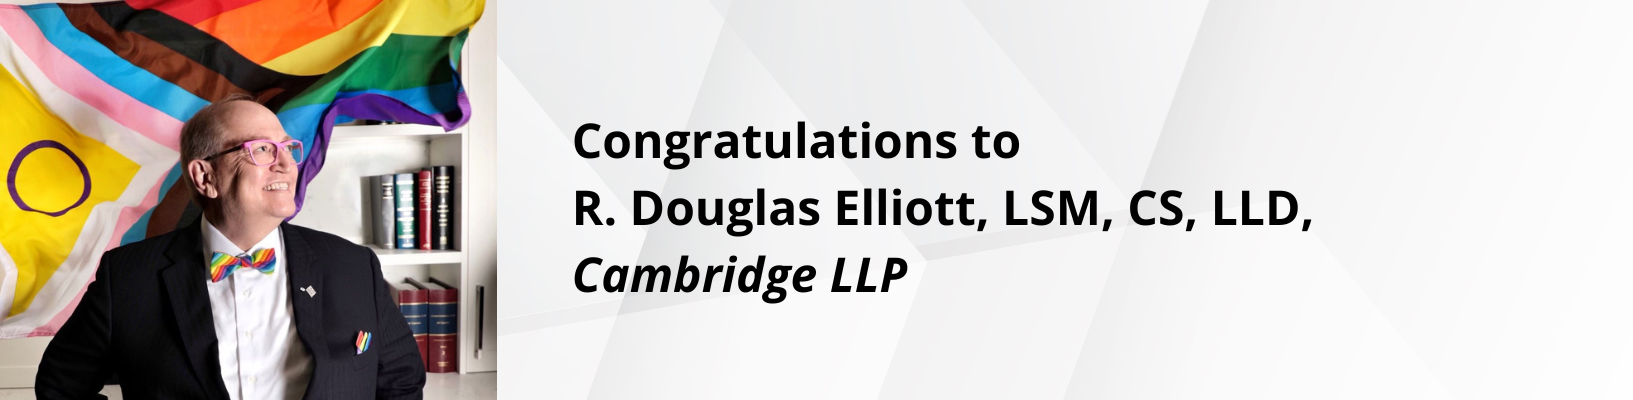 Congratulations to R. Douglas Elliott, LSM, CS, LLD, Cambridge LLP